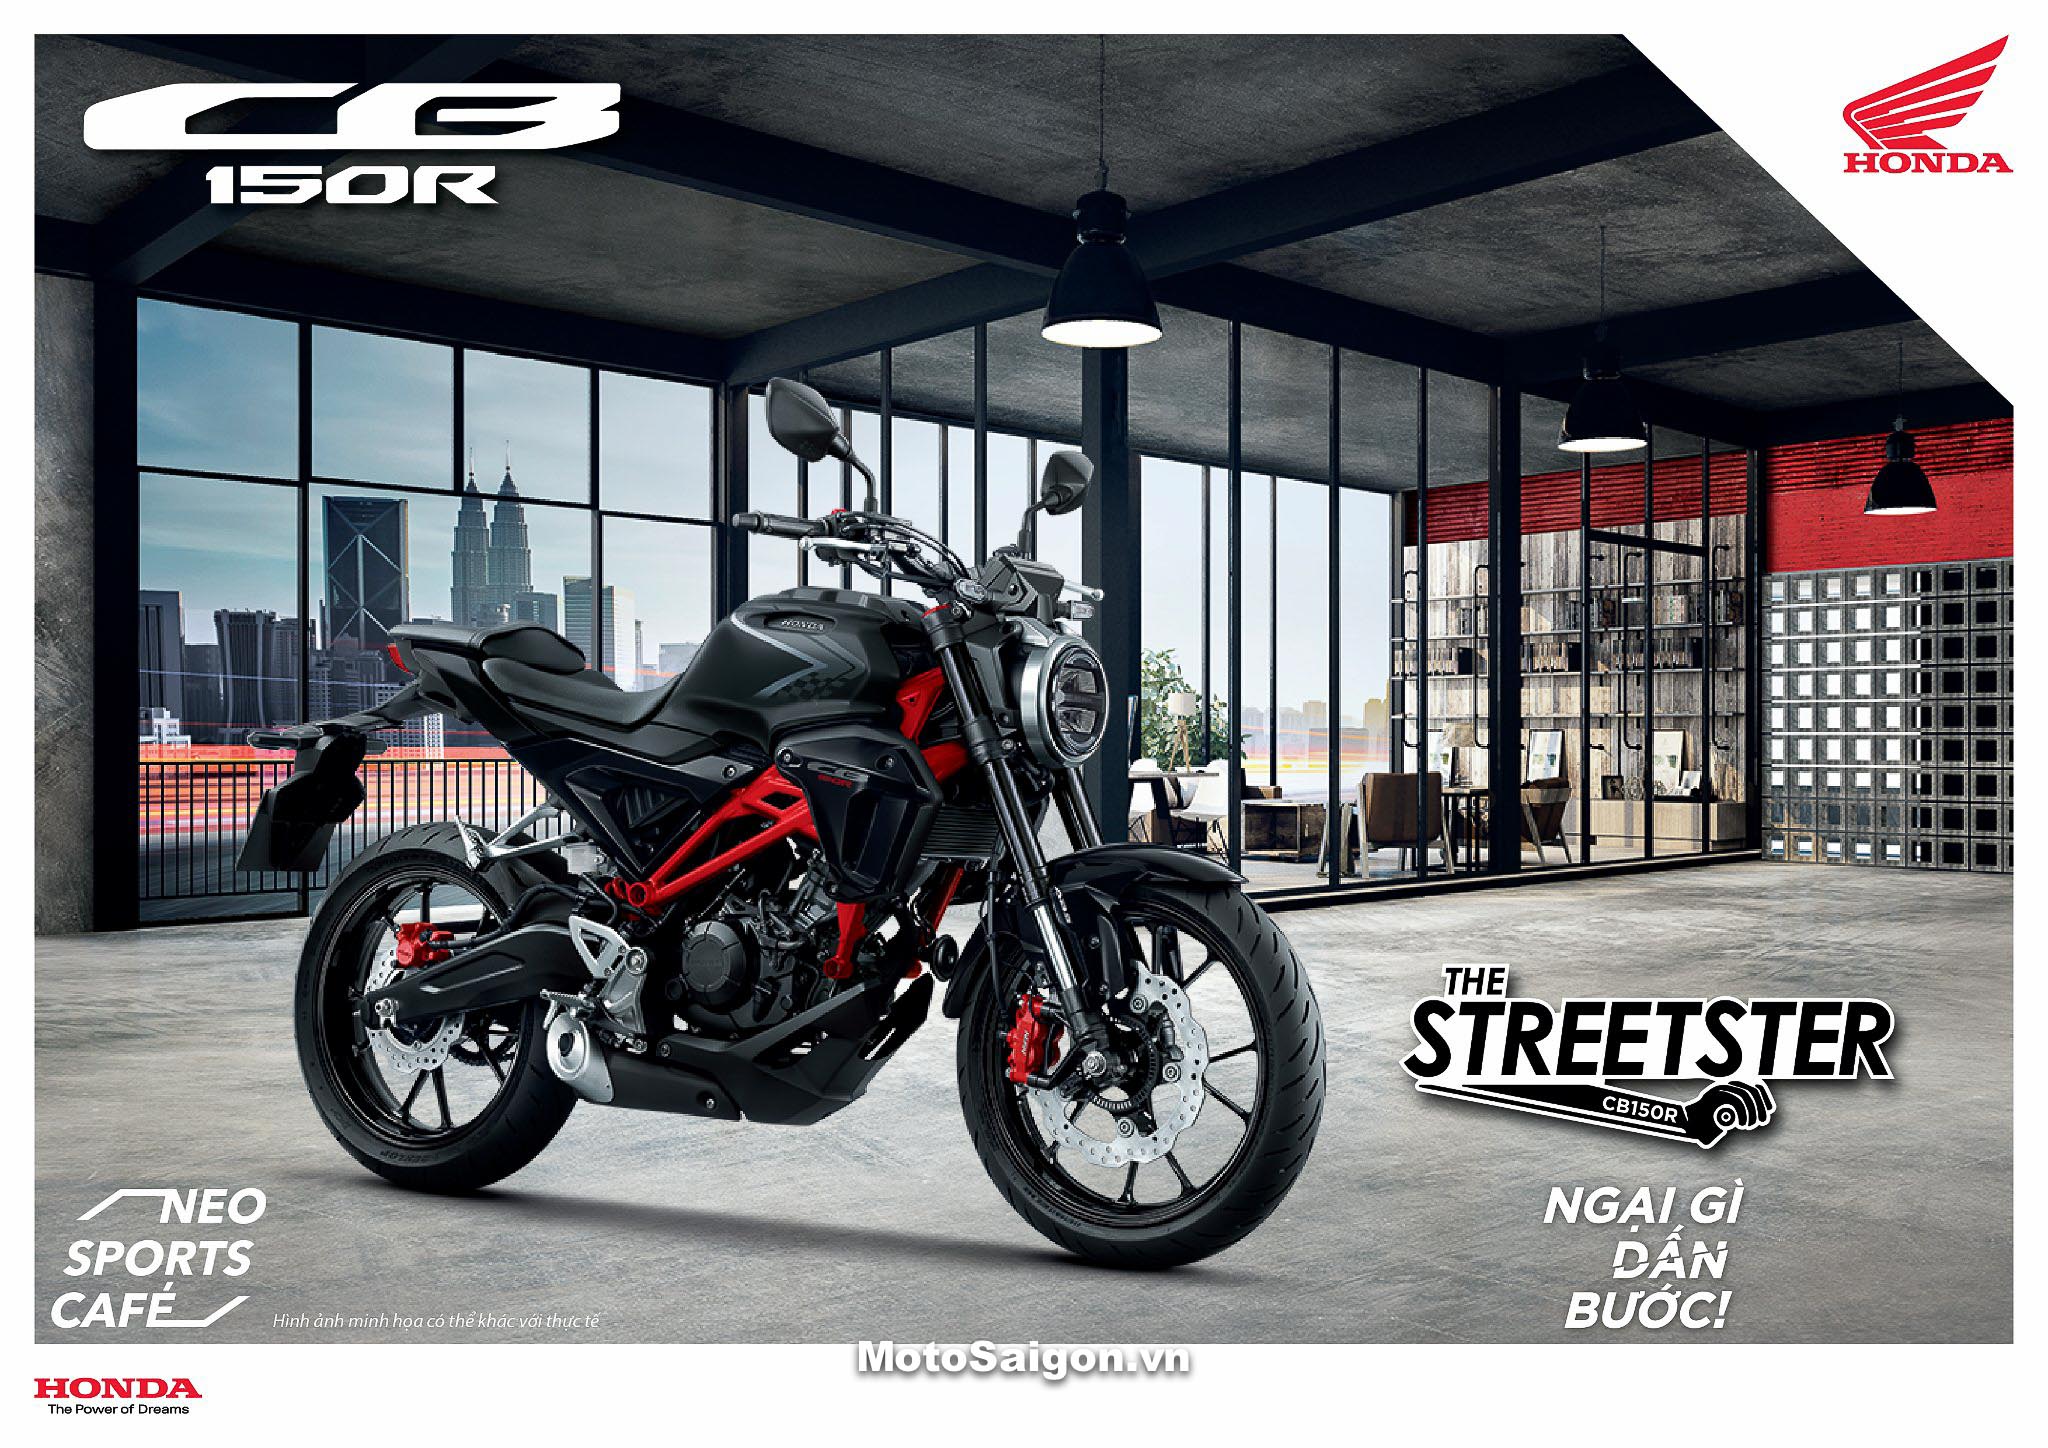 CB150R Streetster 2022 phiên bản mới đã được Honda ra mắt kèm giá bán